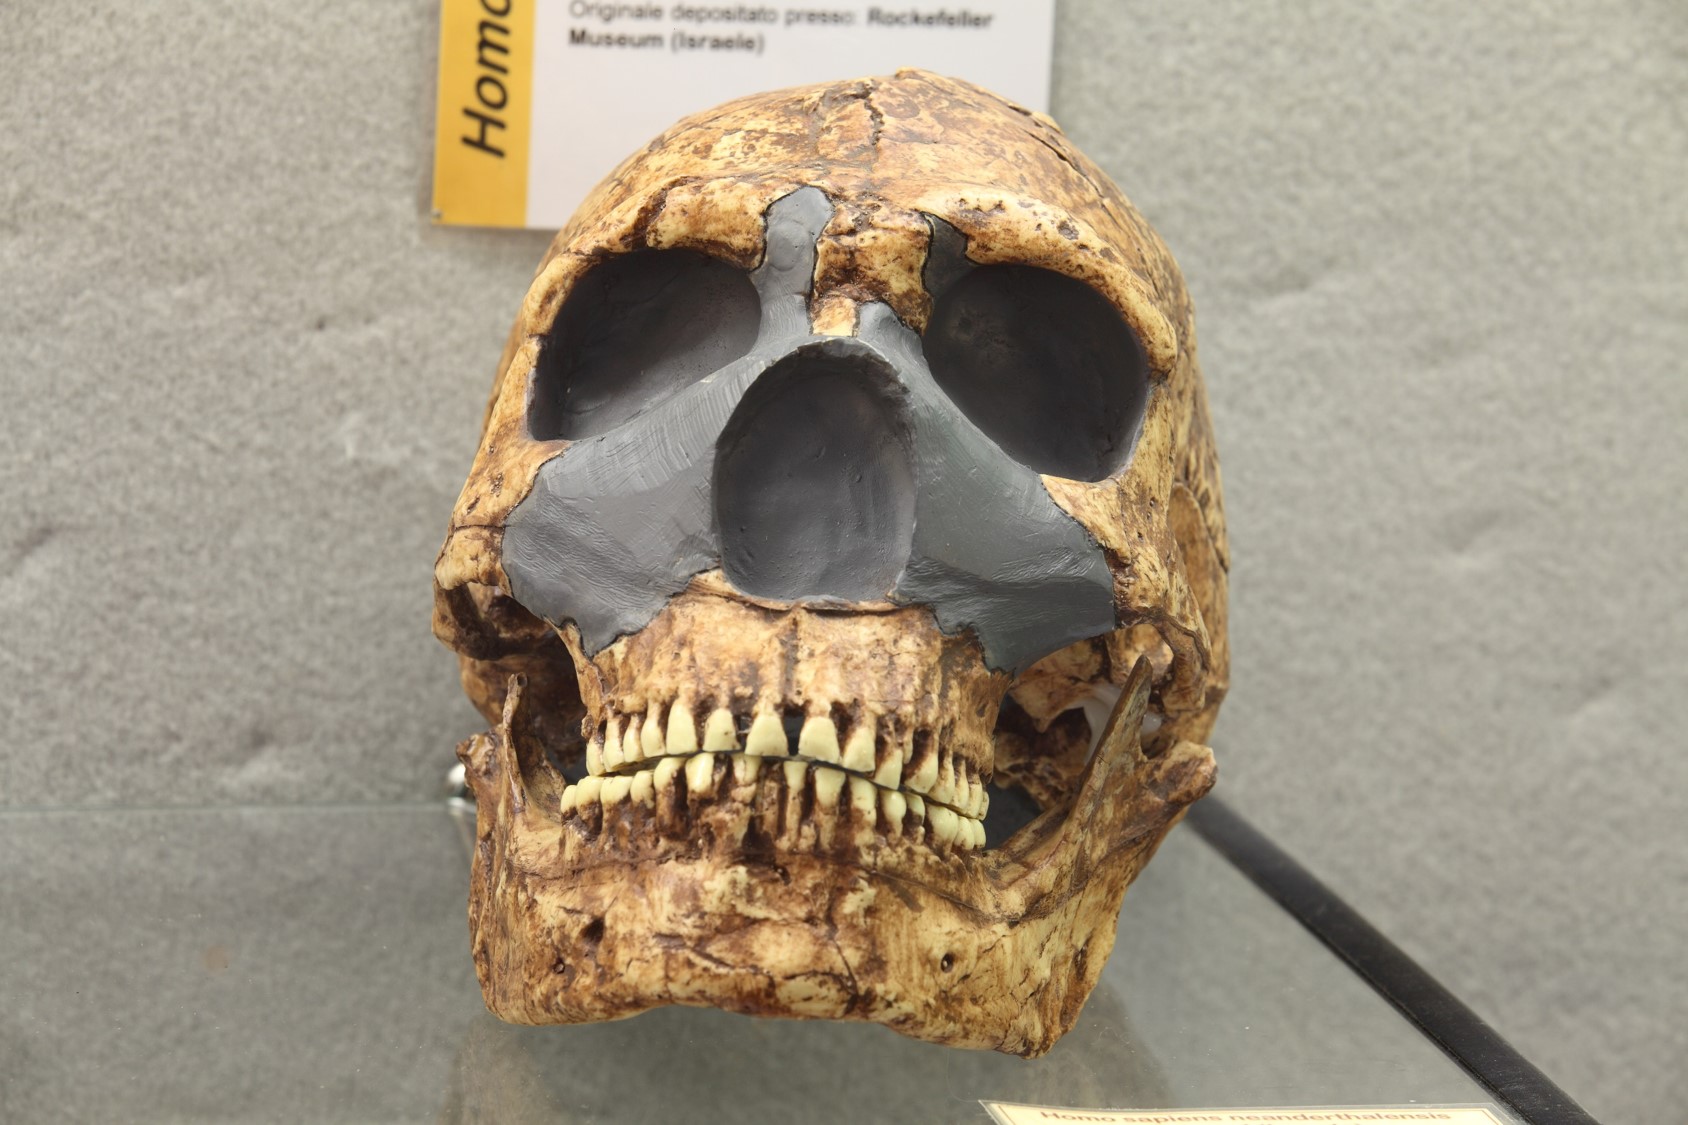 Riproduzione di cranio di Homo di Neandertal rinvenuto ad Amud (Israele).